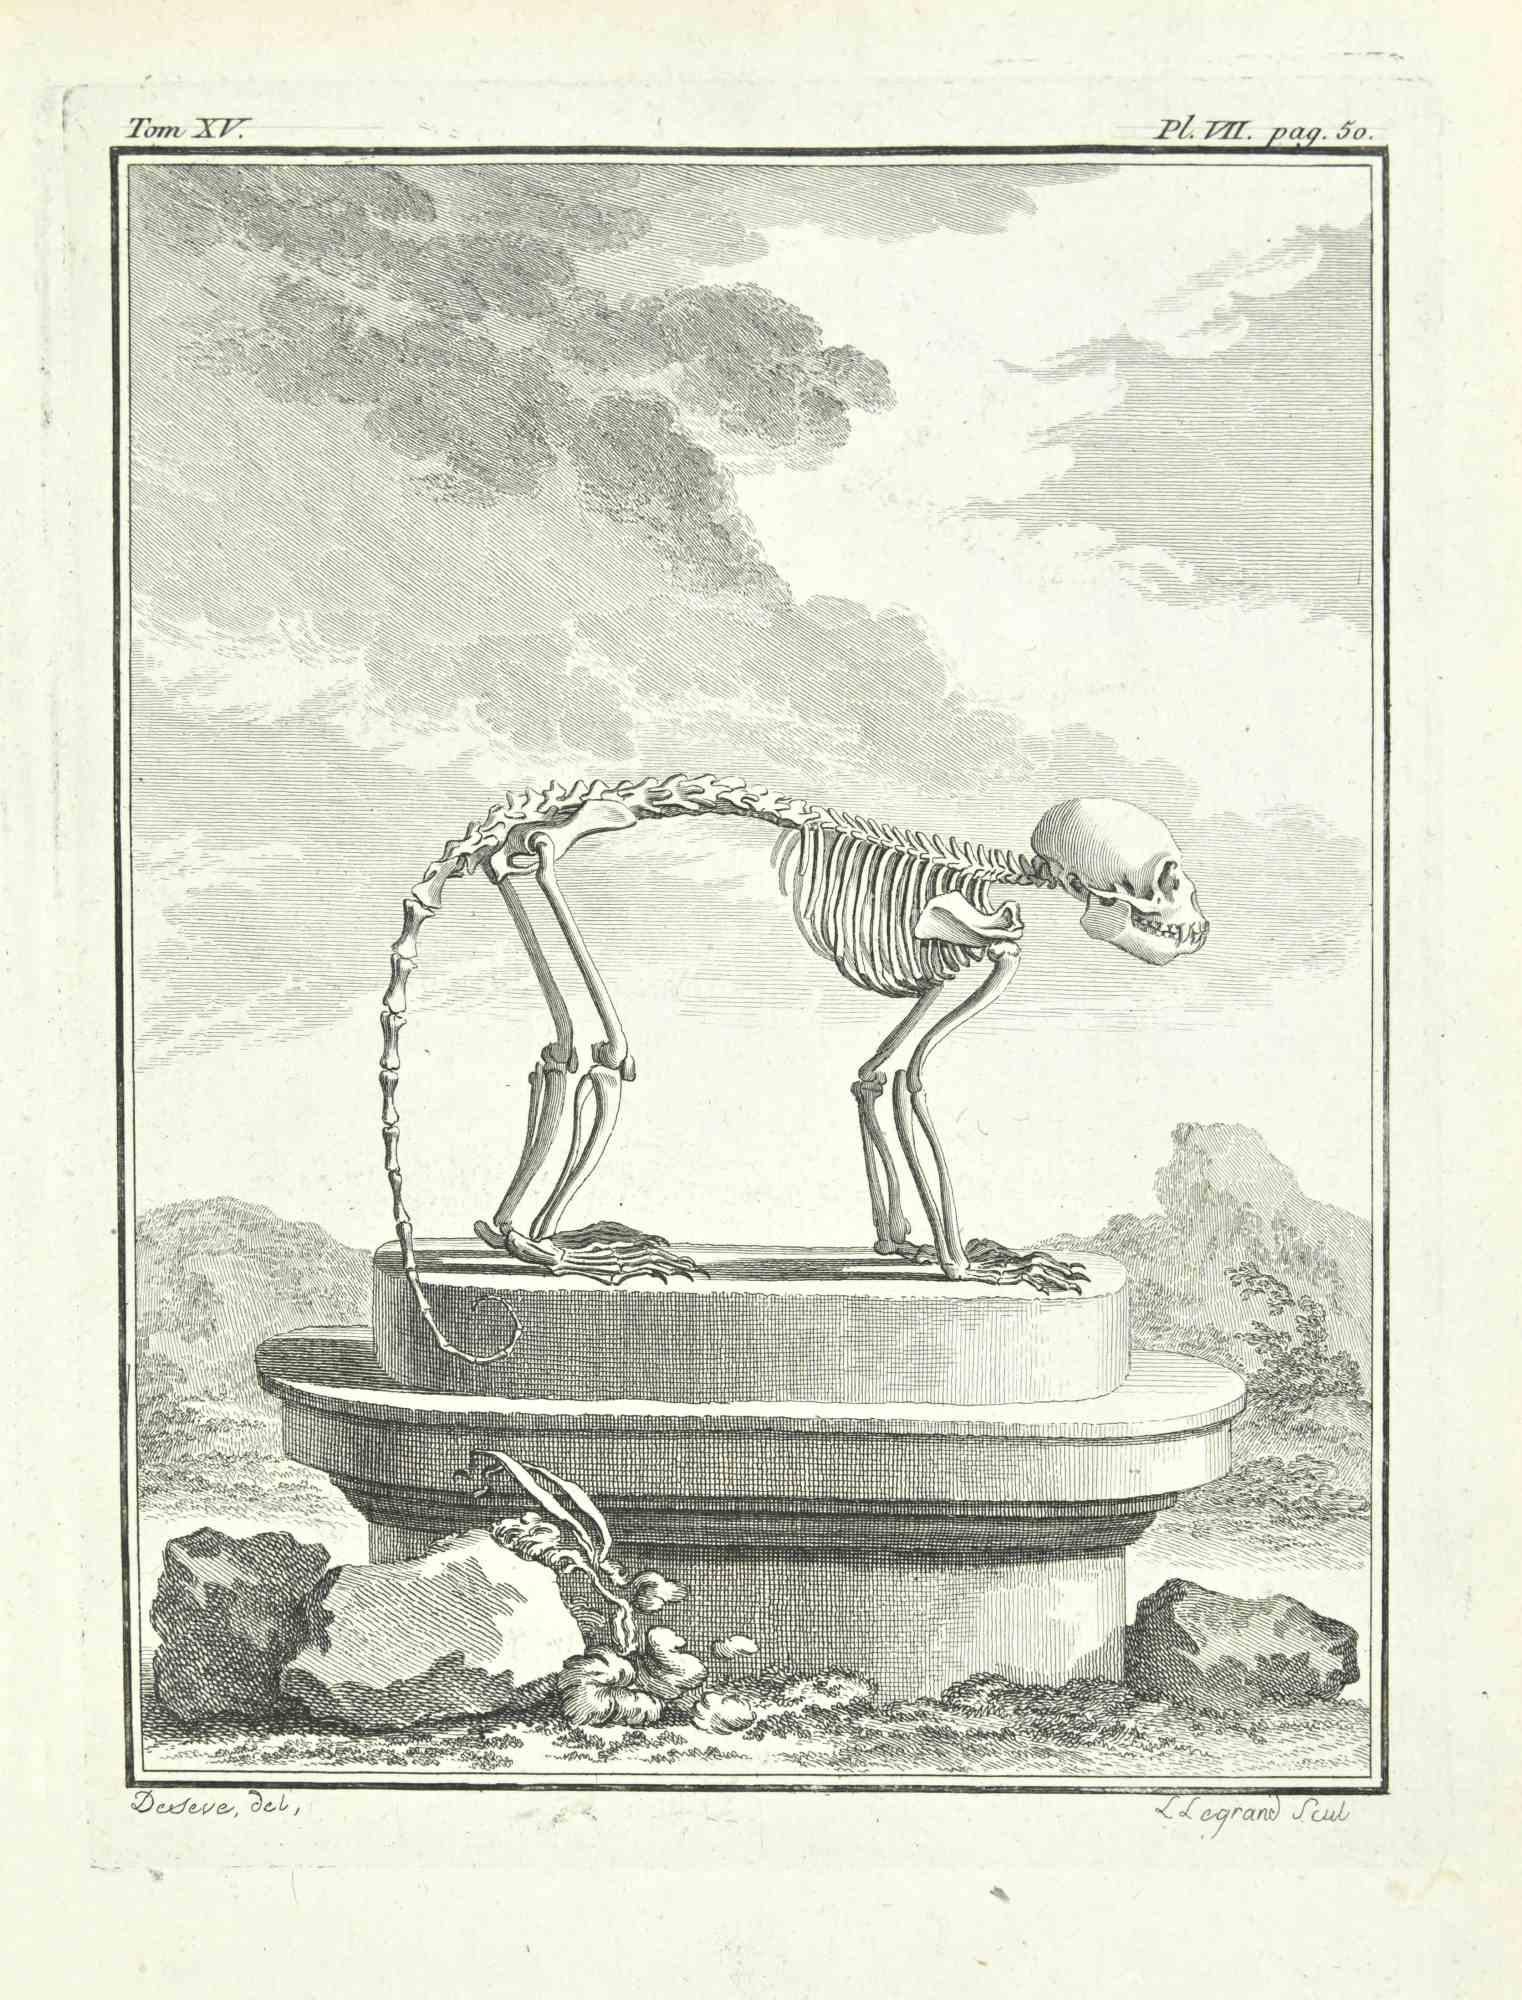 Das Skelett ist eine Radierung von Louis Legrand (1723-1807) aus dem Jahr 1771.

In der Platte signiert.

Das Kunstwerk gehört zu der Suite "Histoire naturelle, générale et particulière avec la description du Cabinet du Roi". Paris: Imprimerie